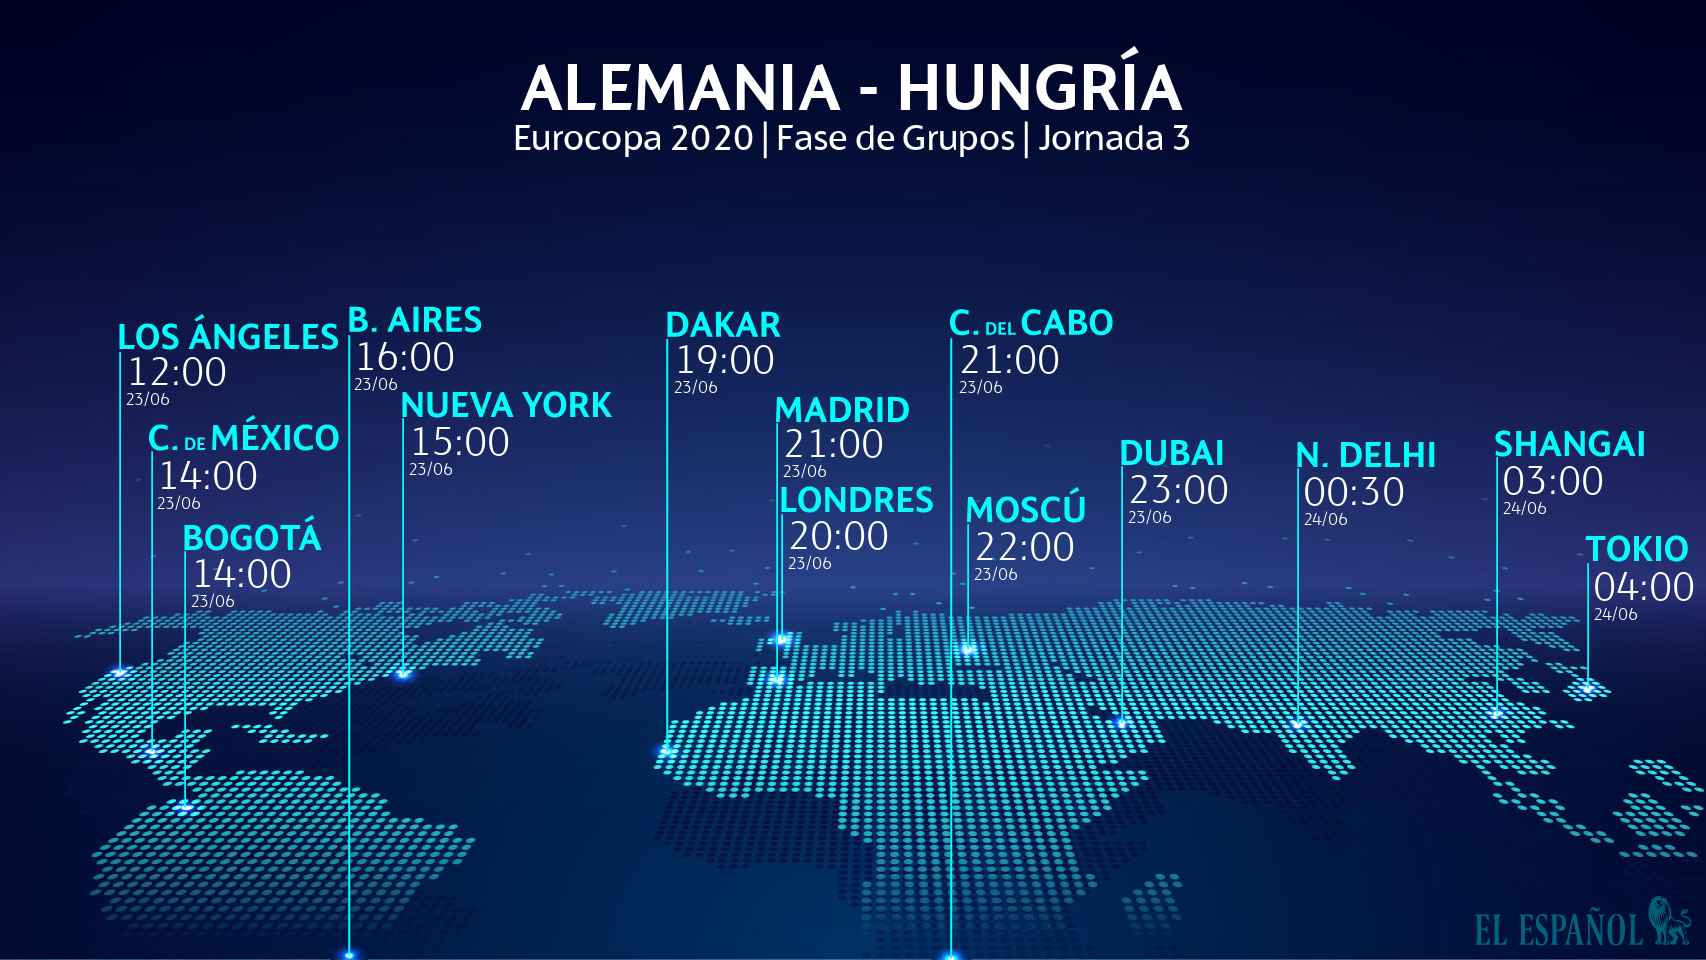 El horario internacional del Alemania - Hungría de la Eurocopa